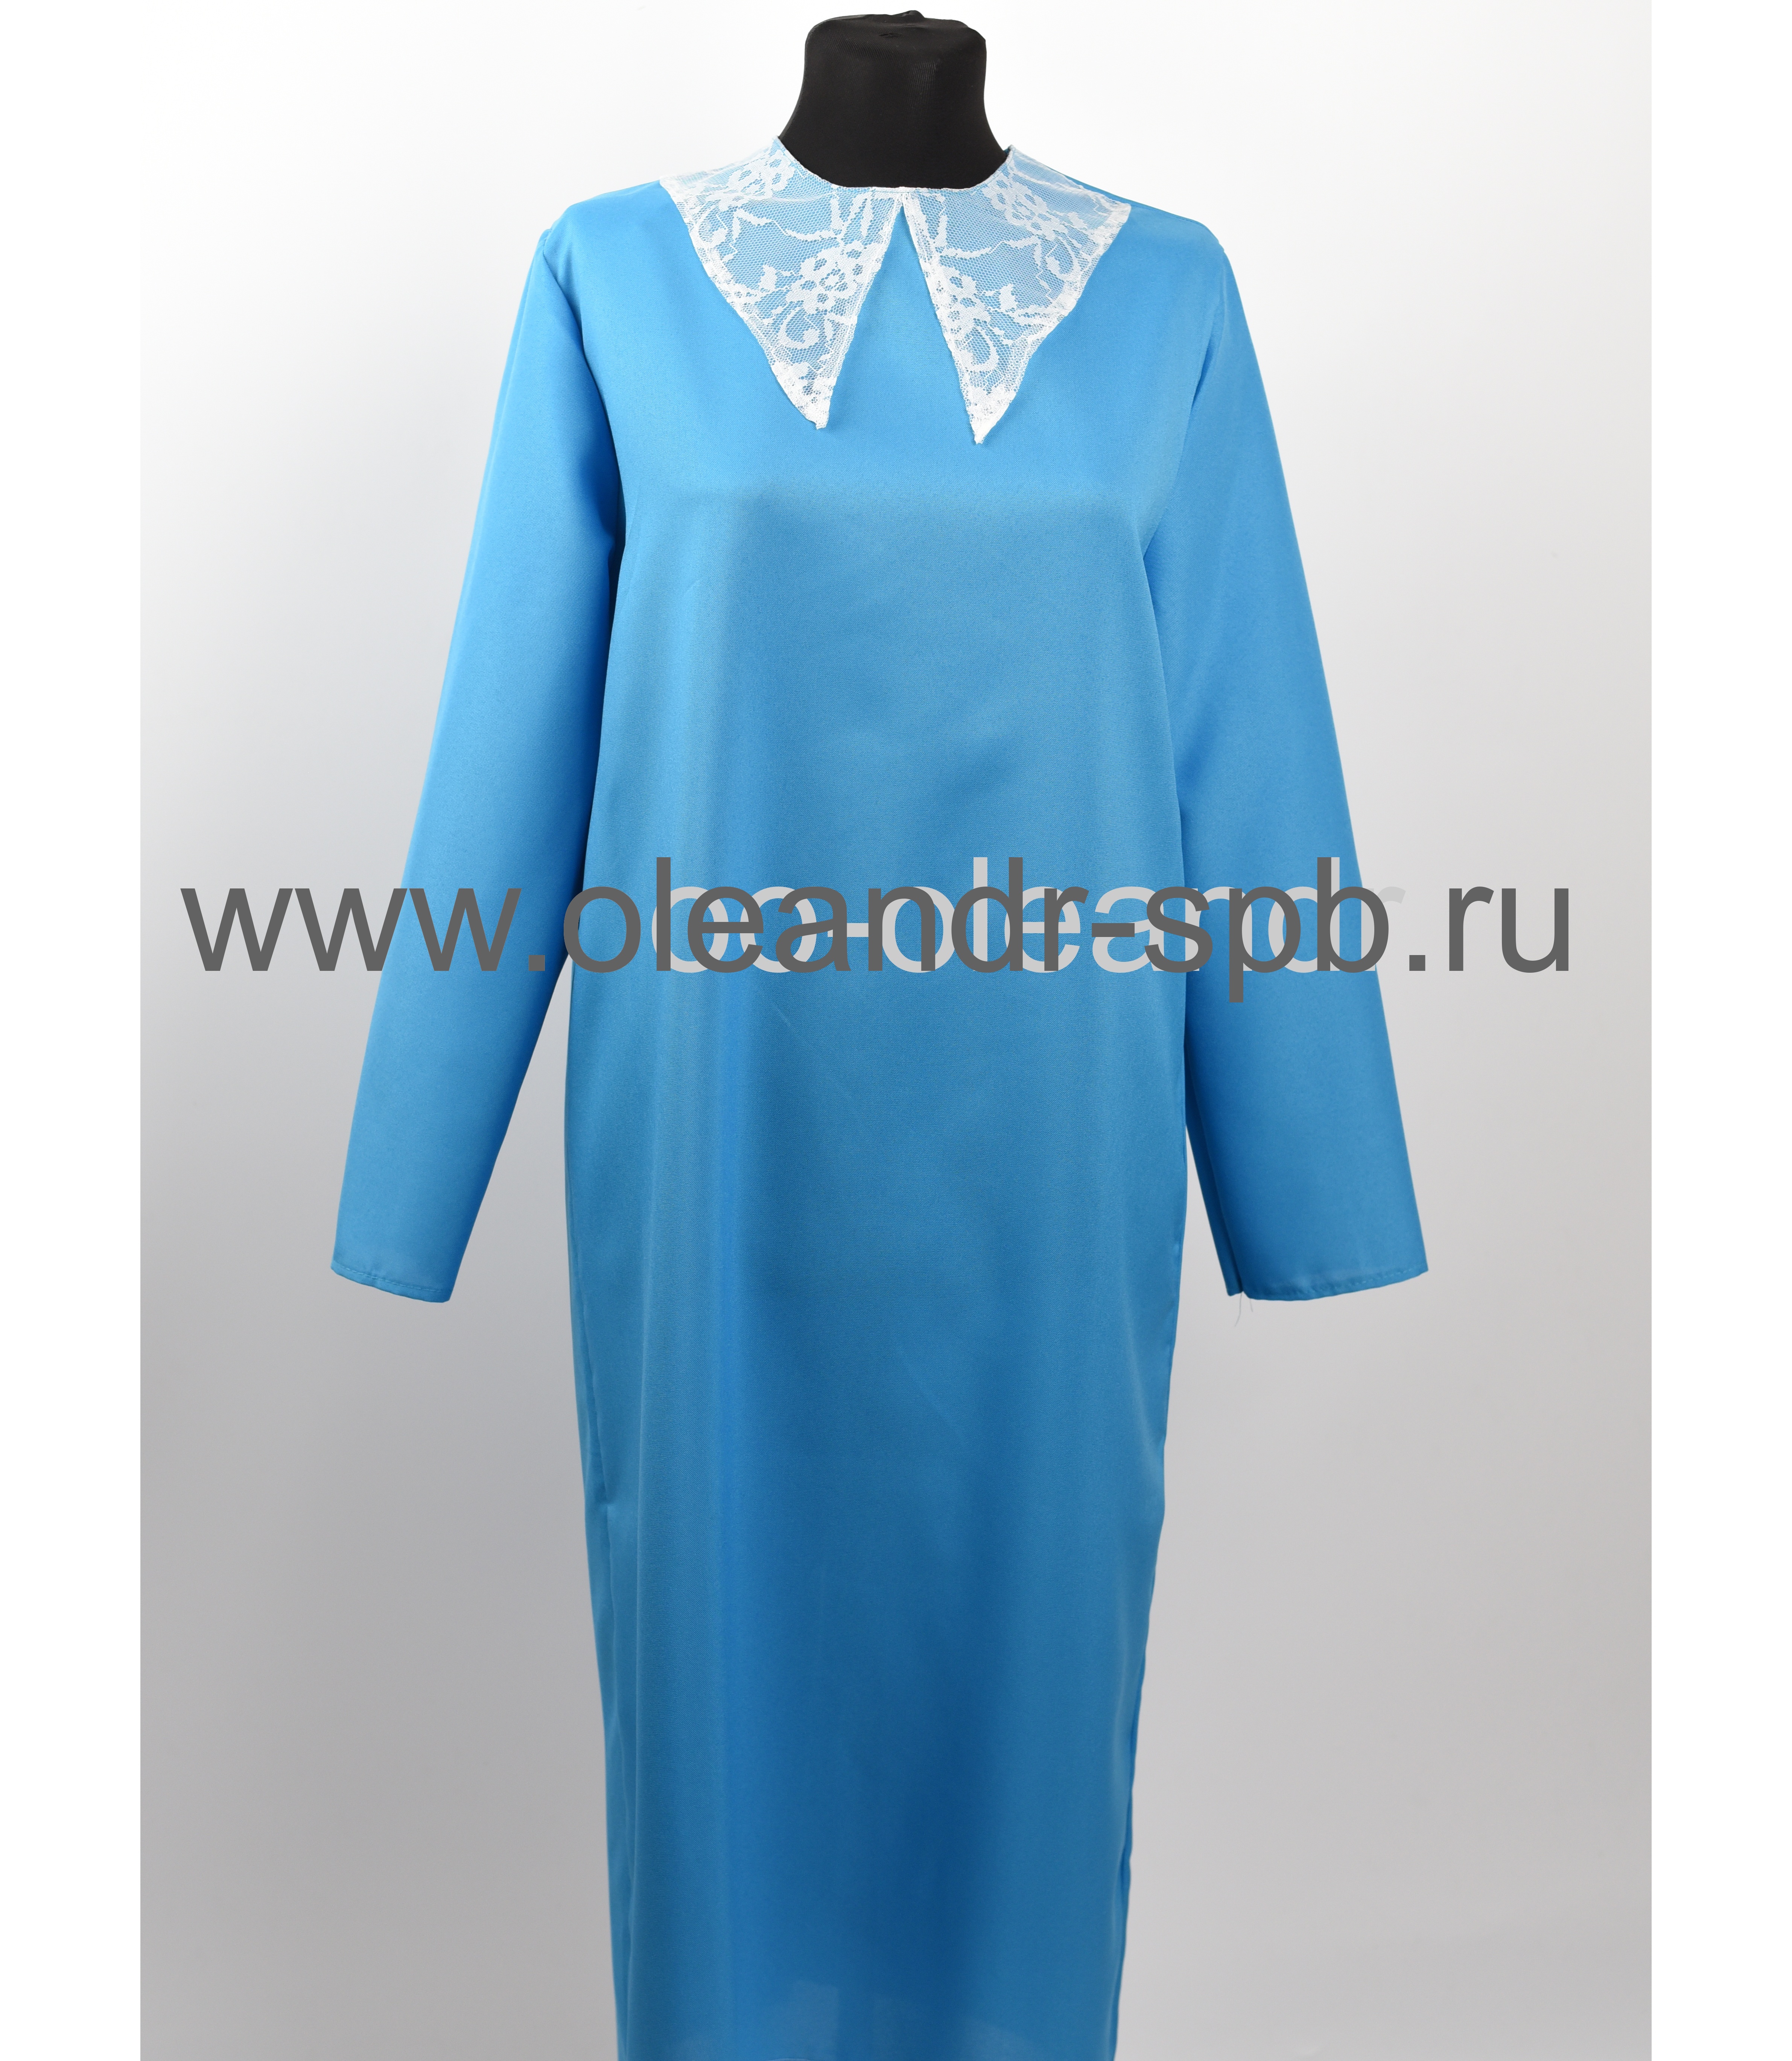 Т5124 Платье ритуальное "Прованс"																													